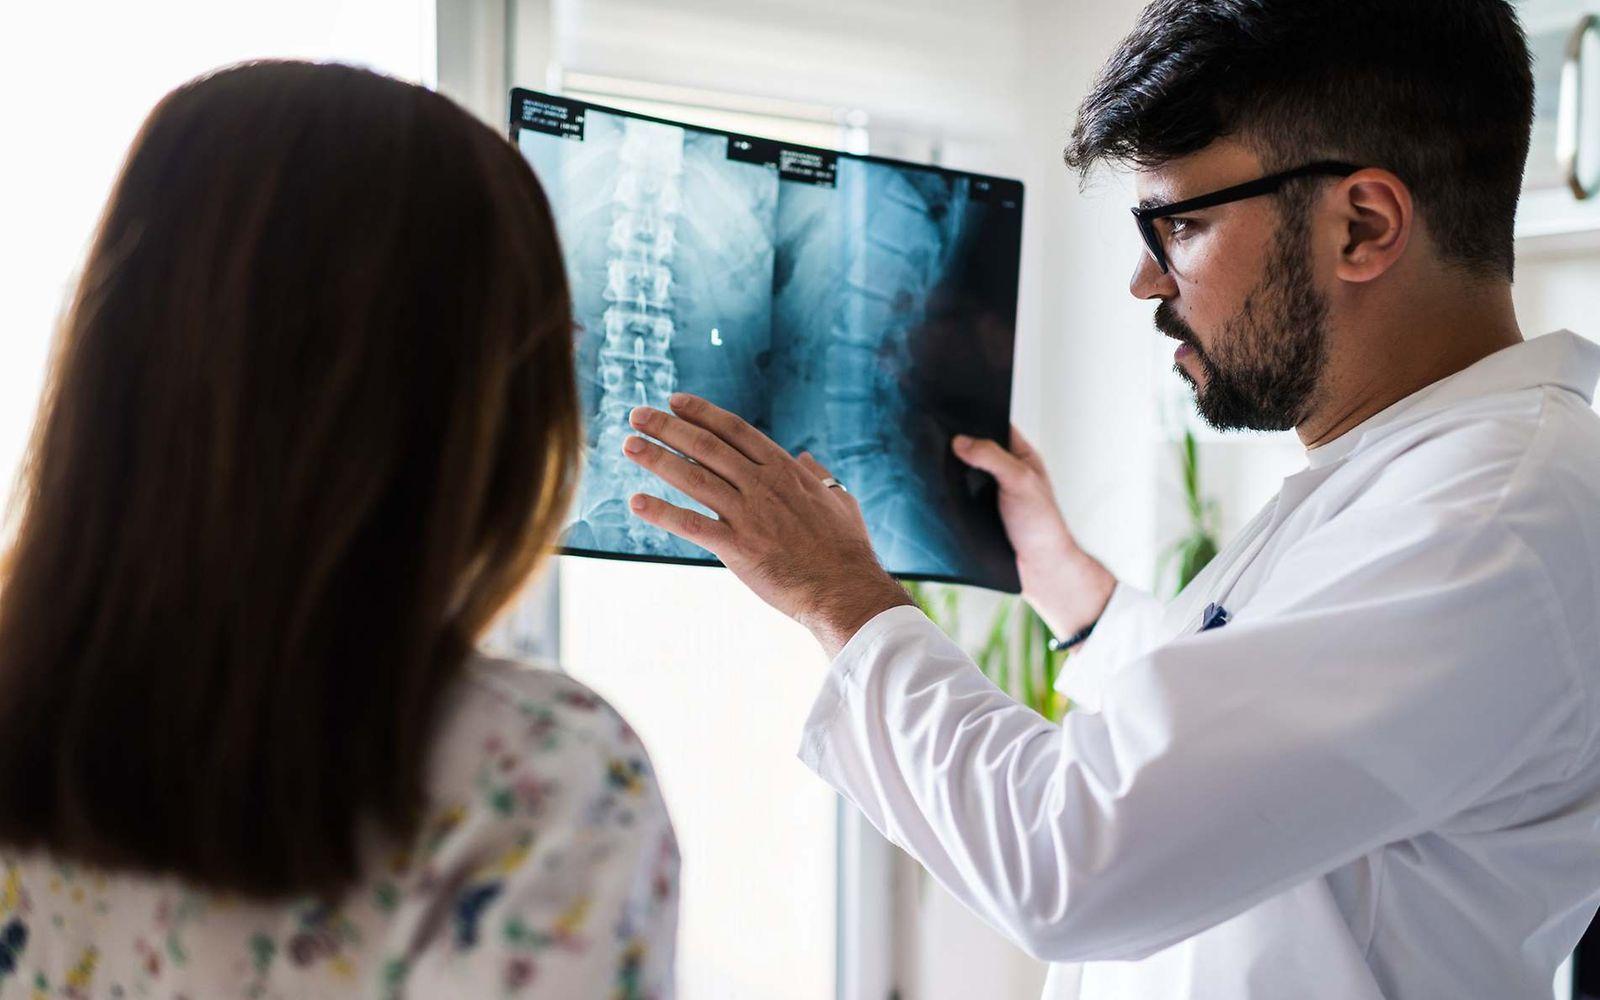 Bild: Arzt erklärt einer Patientin etwas zu ihrem Röntgenbild der Wirbelsäule.